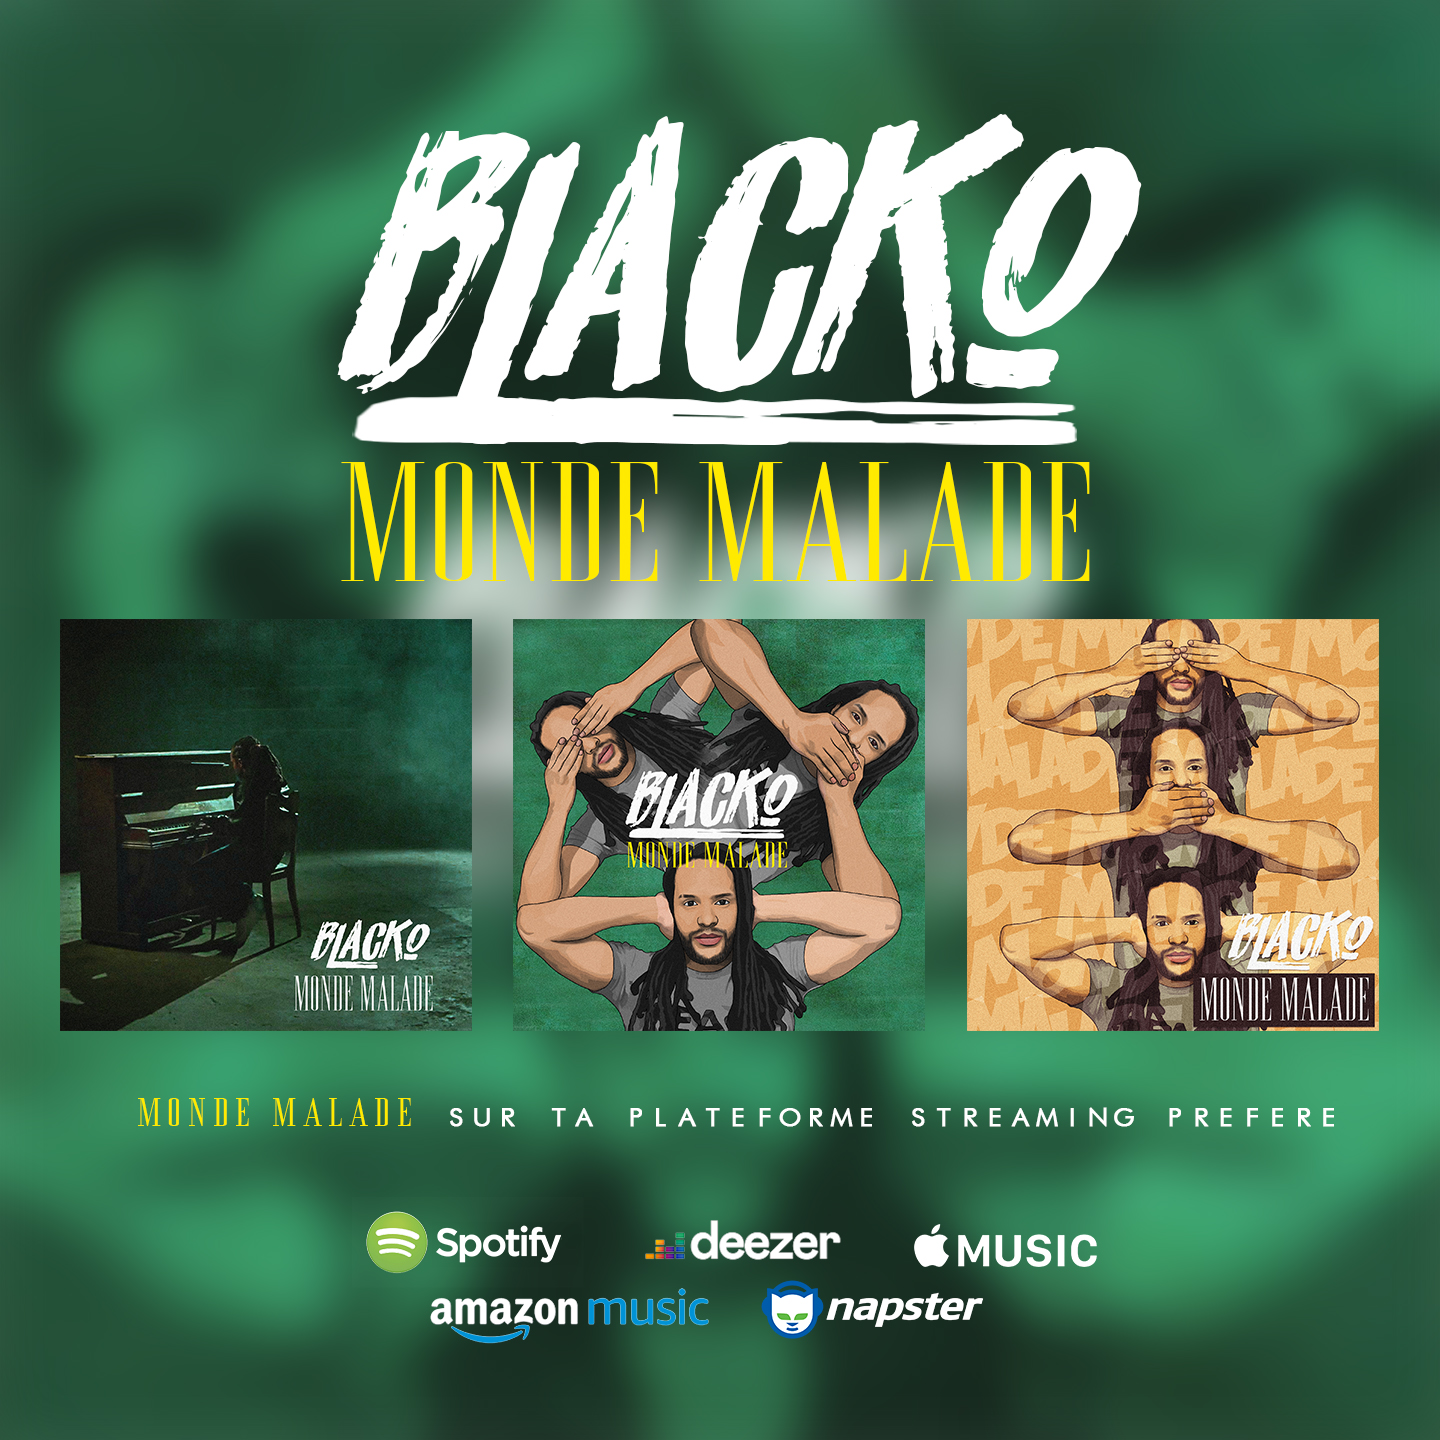 Blacko - Monde Malade